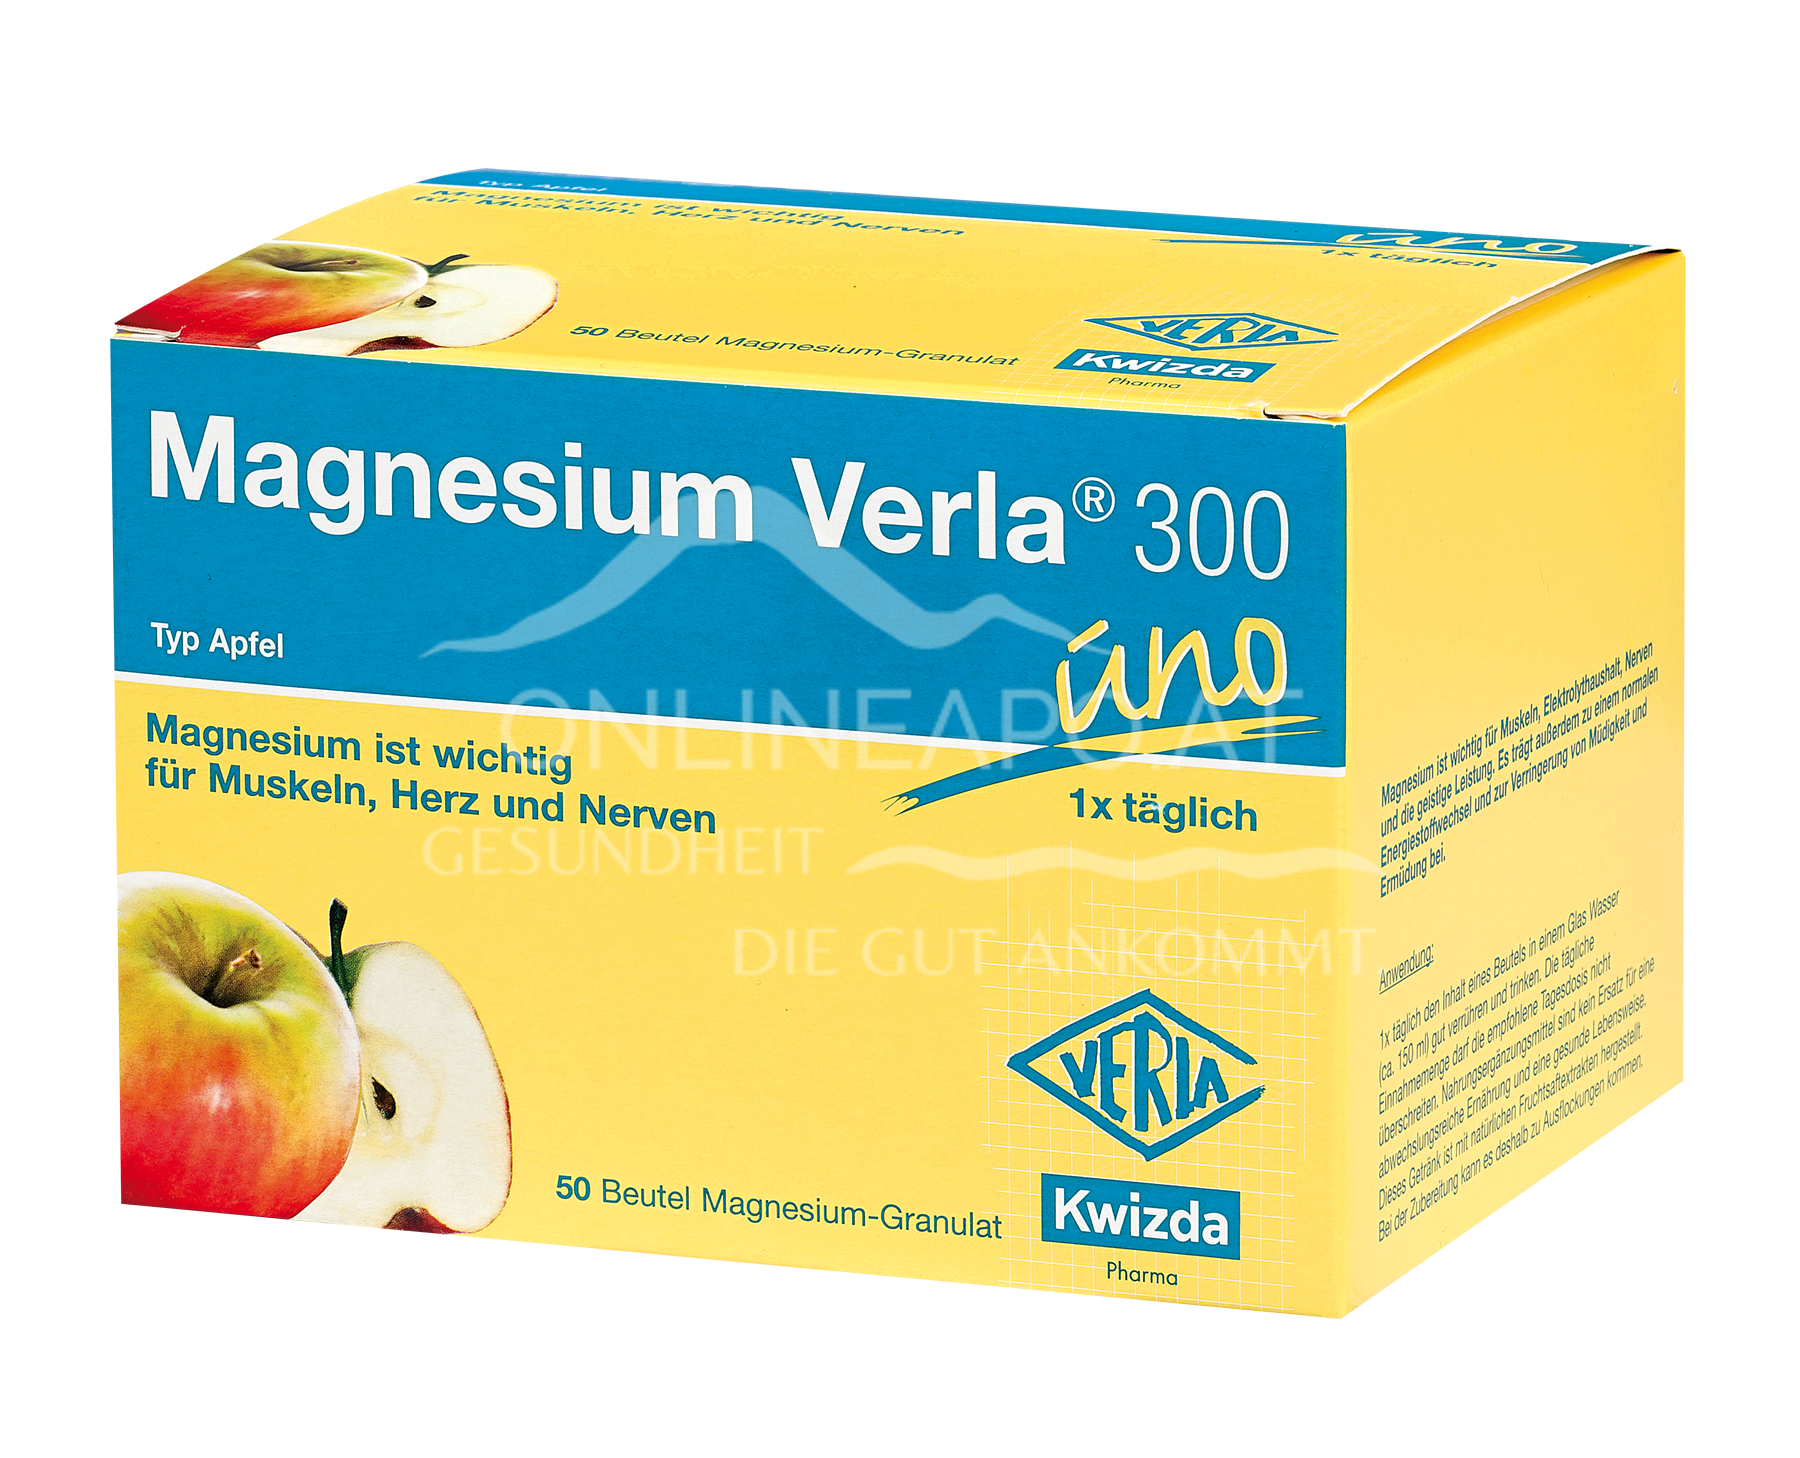 MAGNESIUM VERLA® 300 UNO Granulat Apfel